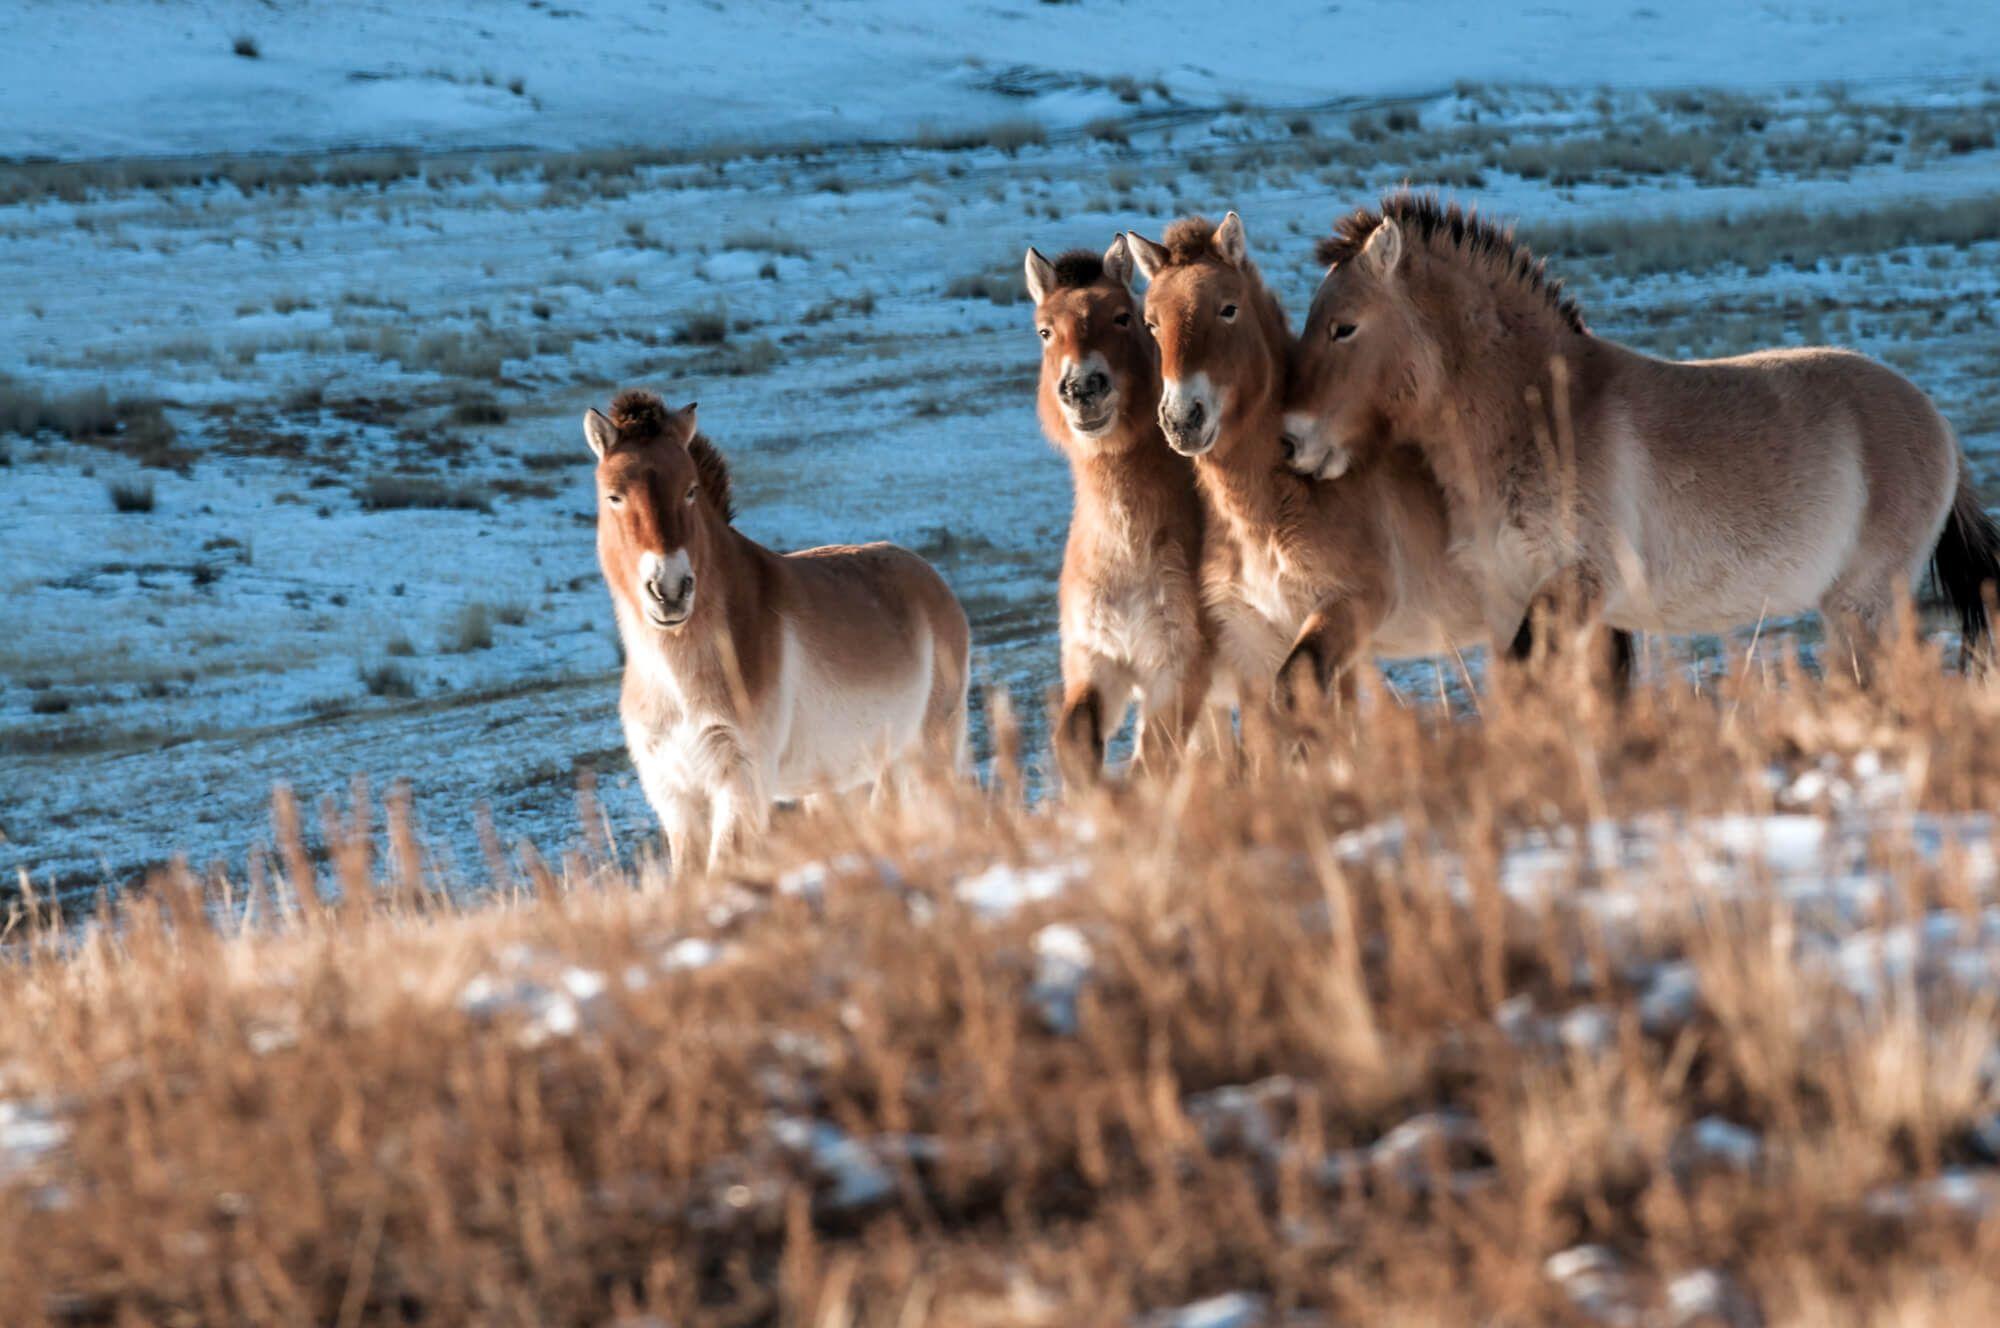 سلوك القطيع – خيول برجفالسكي وهي تلعب مع غروب الشمس. المصور: أستريد هاريسون    المكان: منغوليا